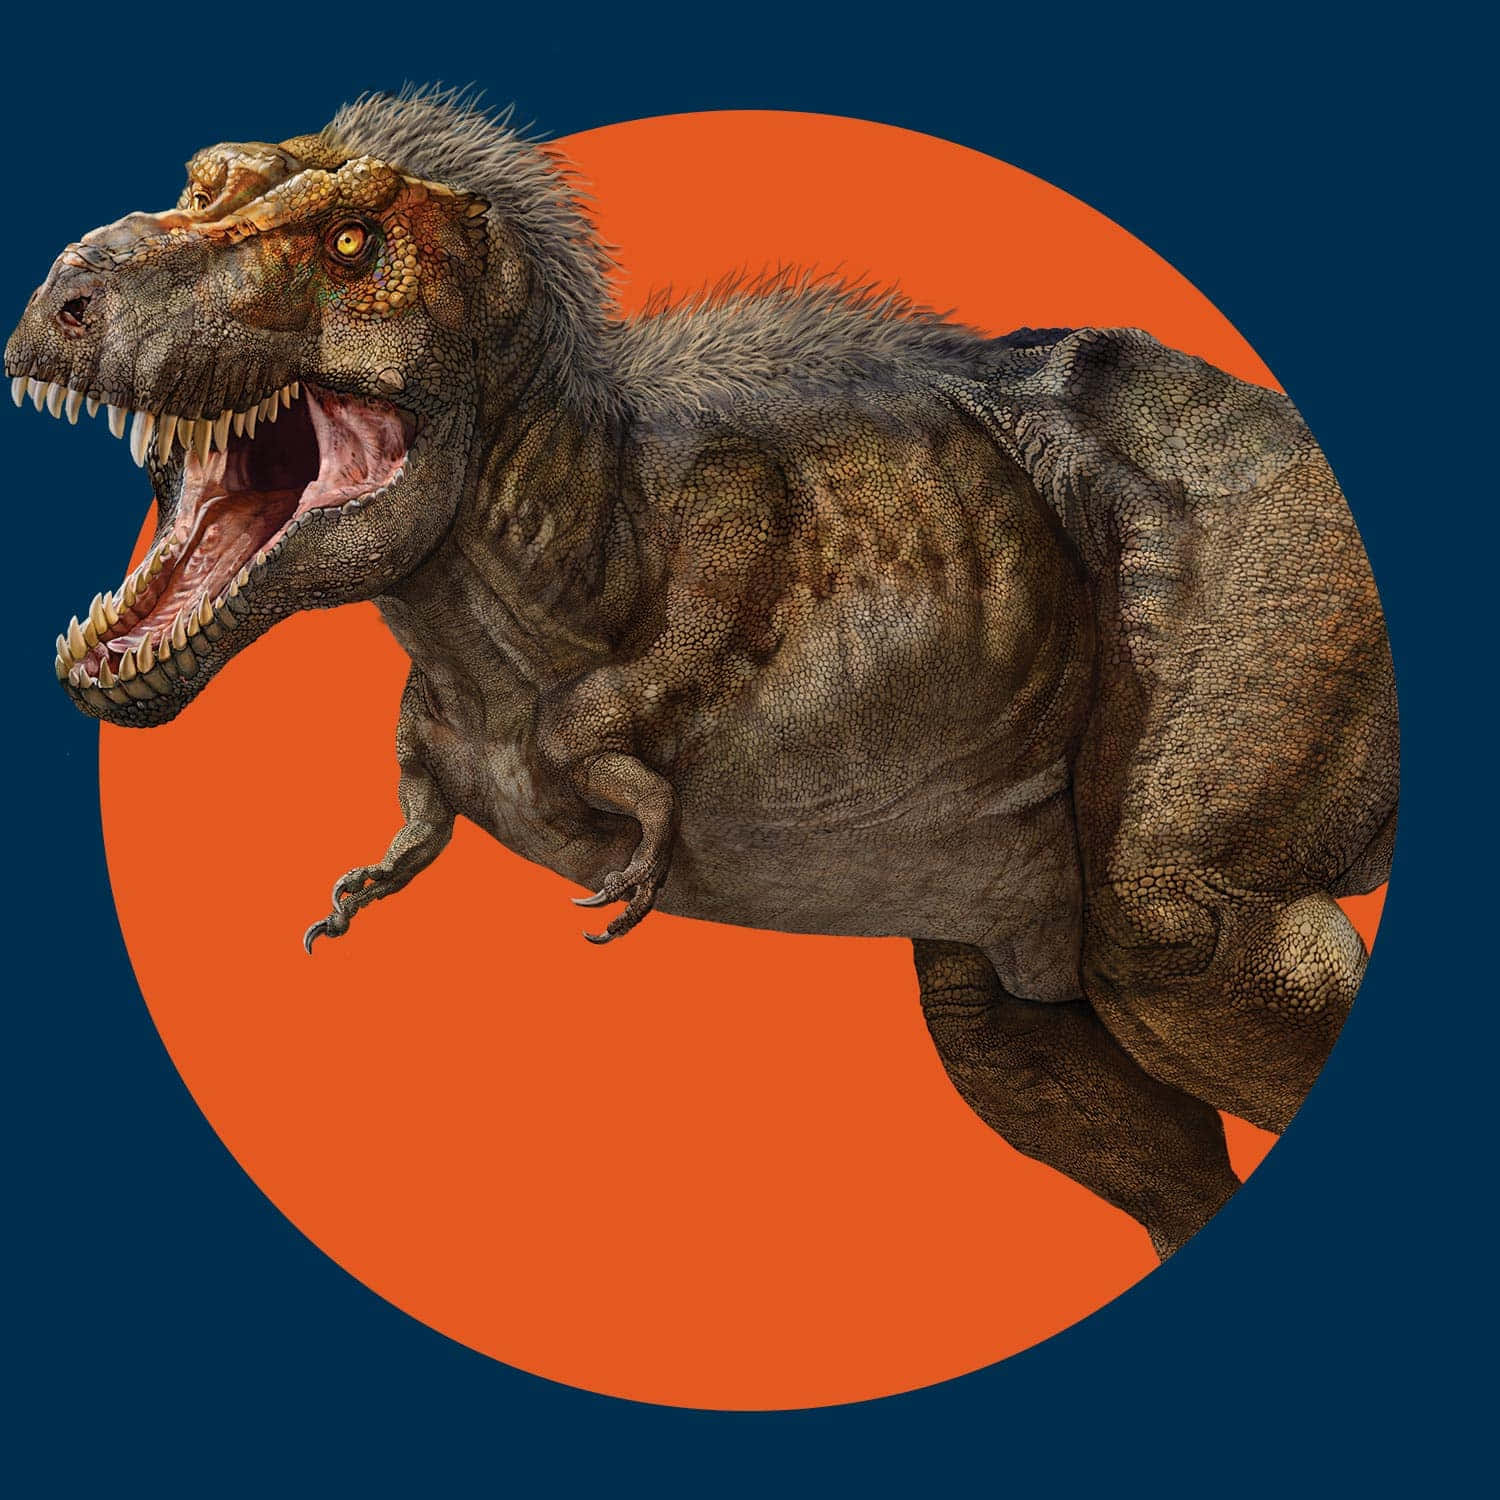 Eint-rex Wird In Einem Orangefarbenen Kreis Gezeigt.